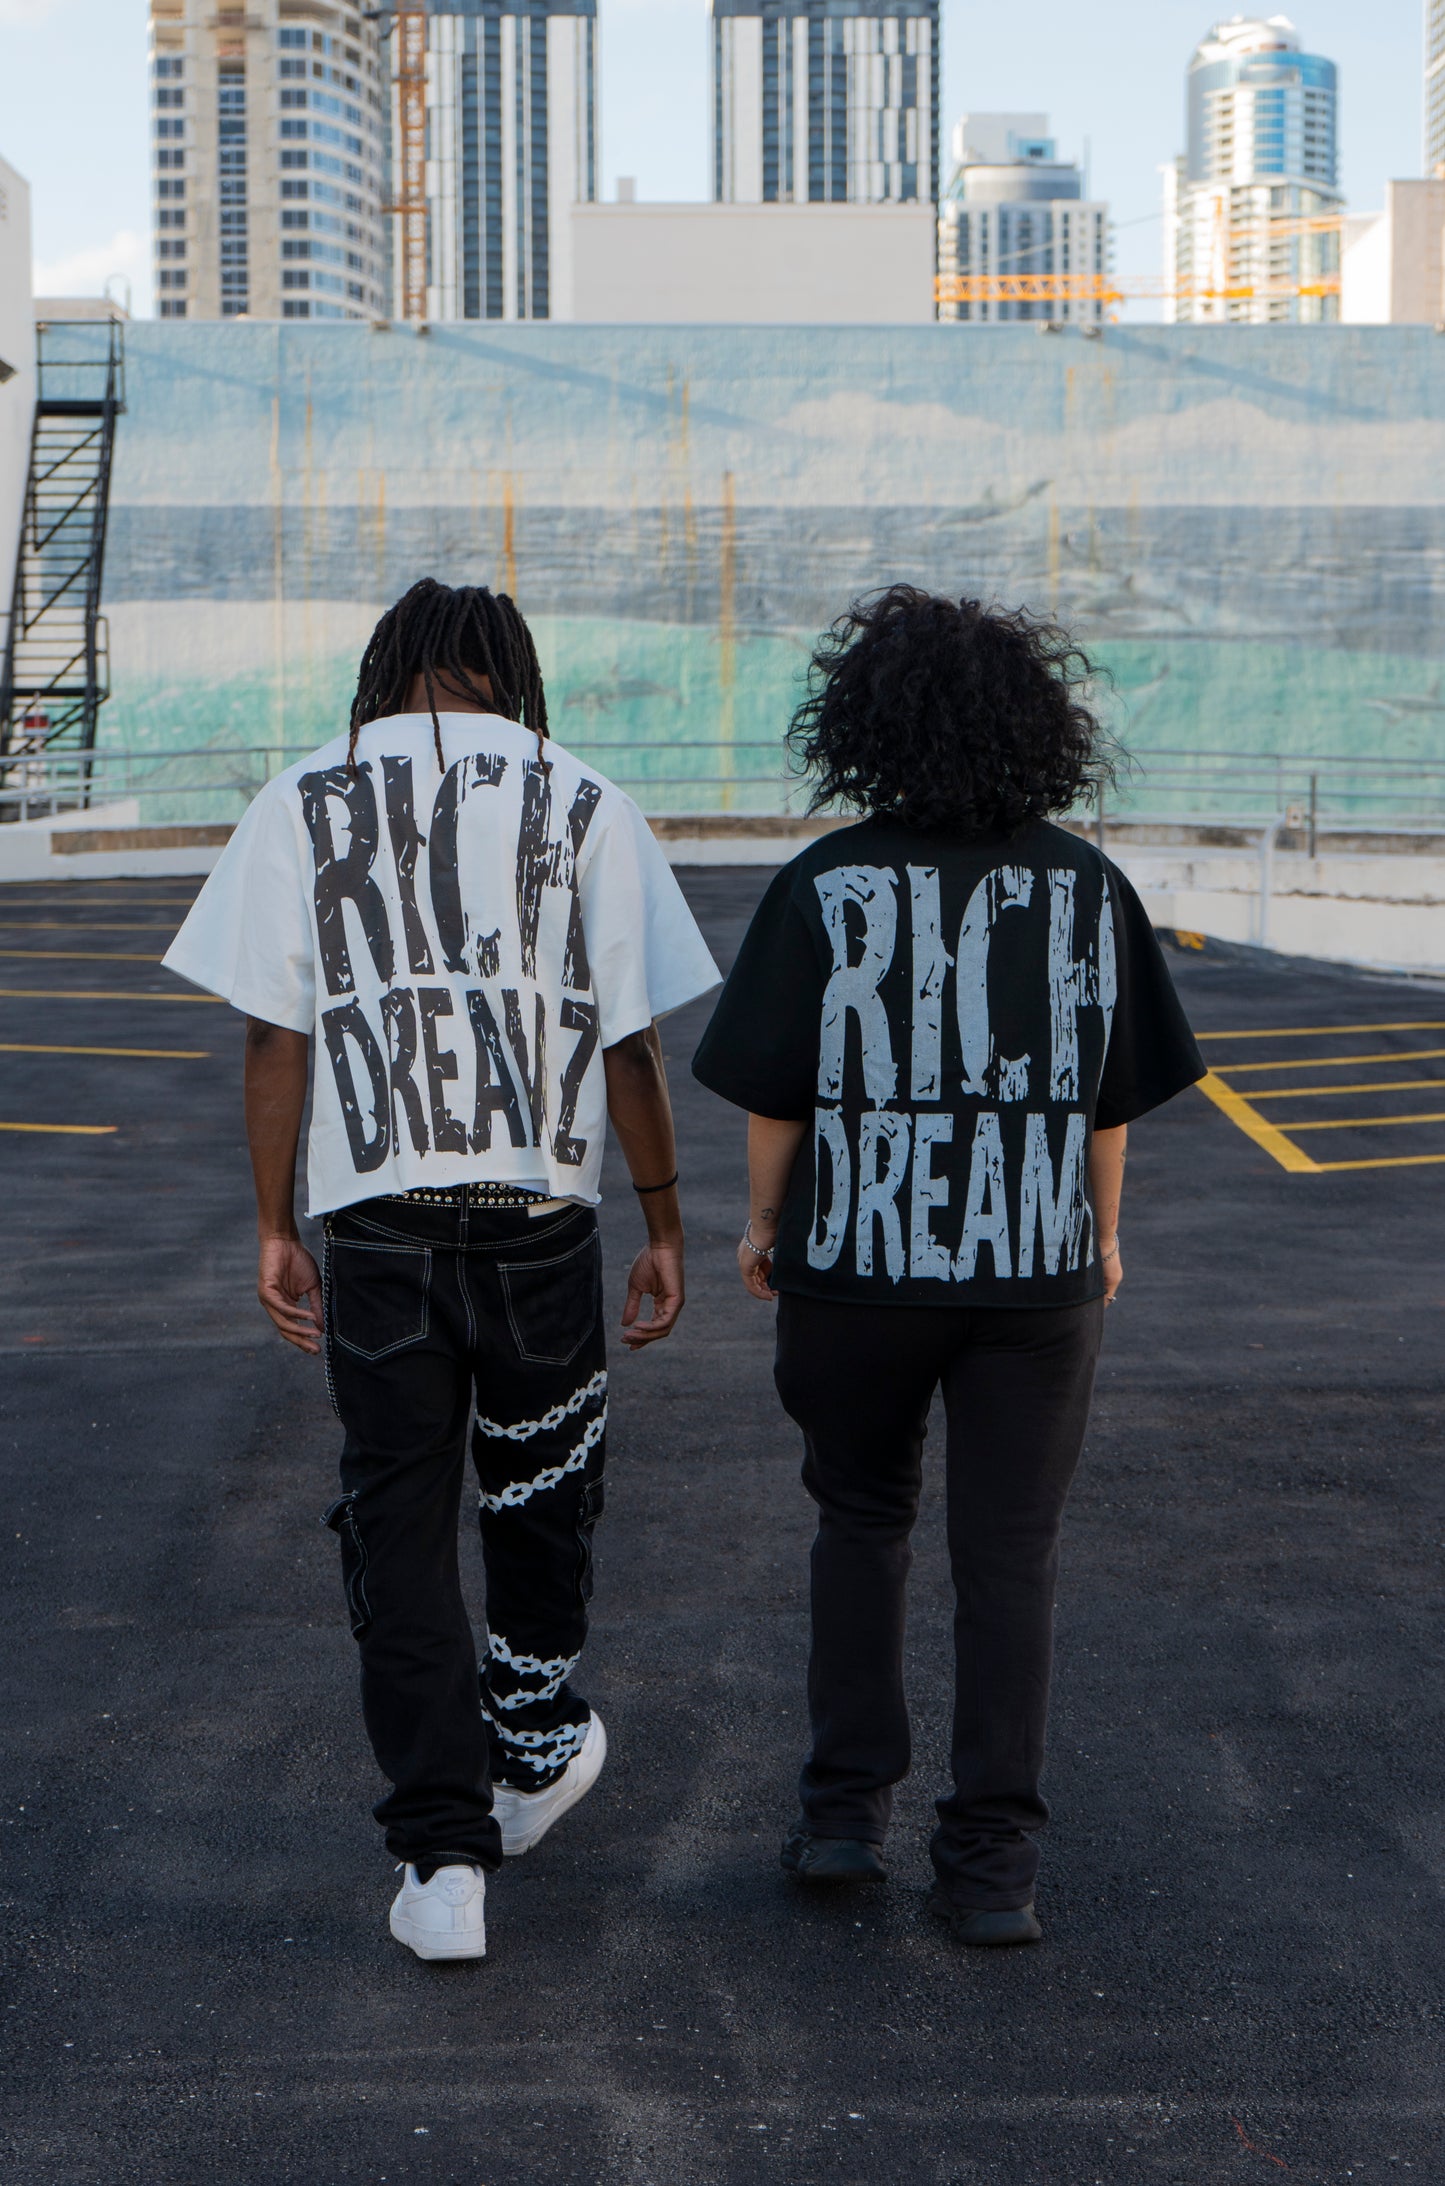 Rich Dreamz (MLK TEE)